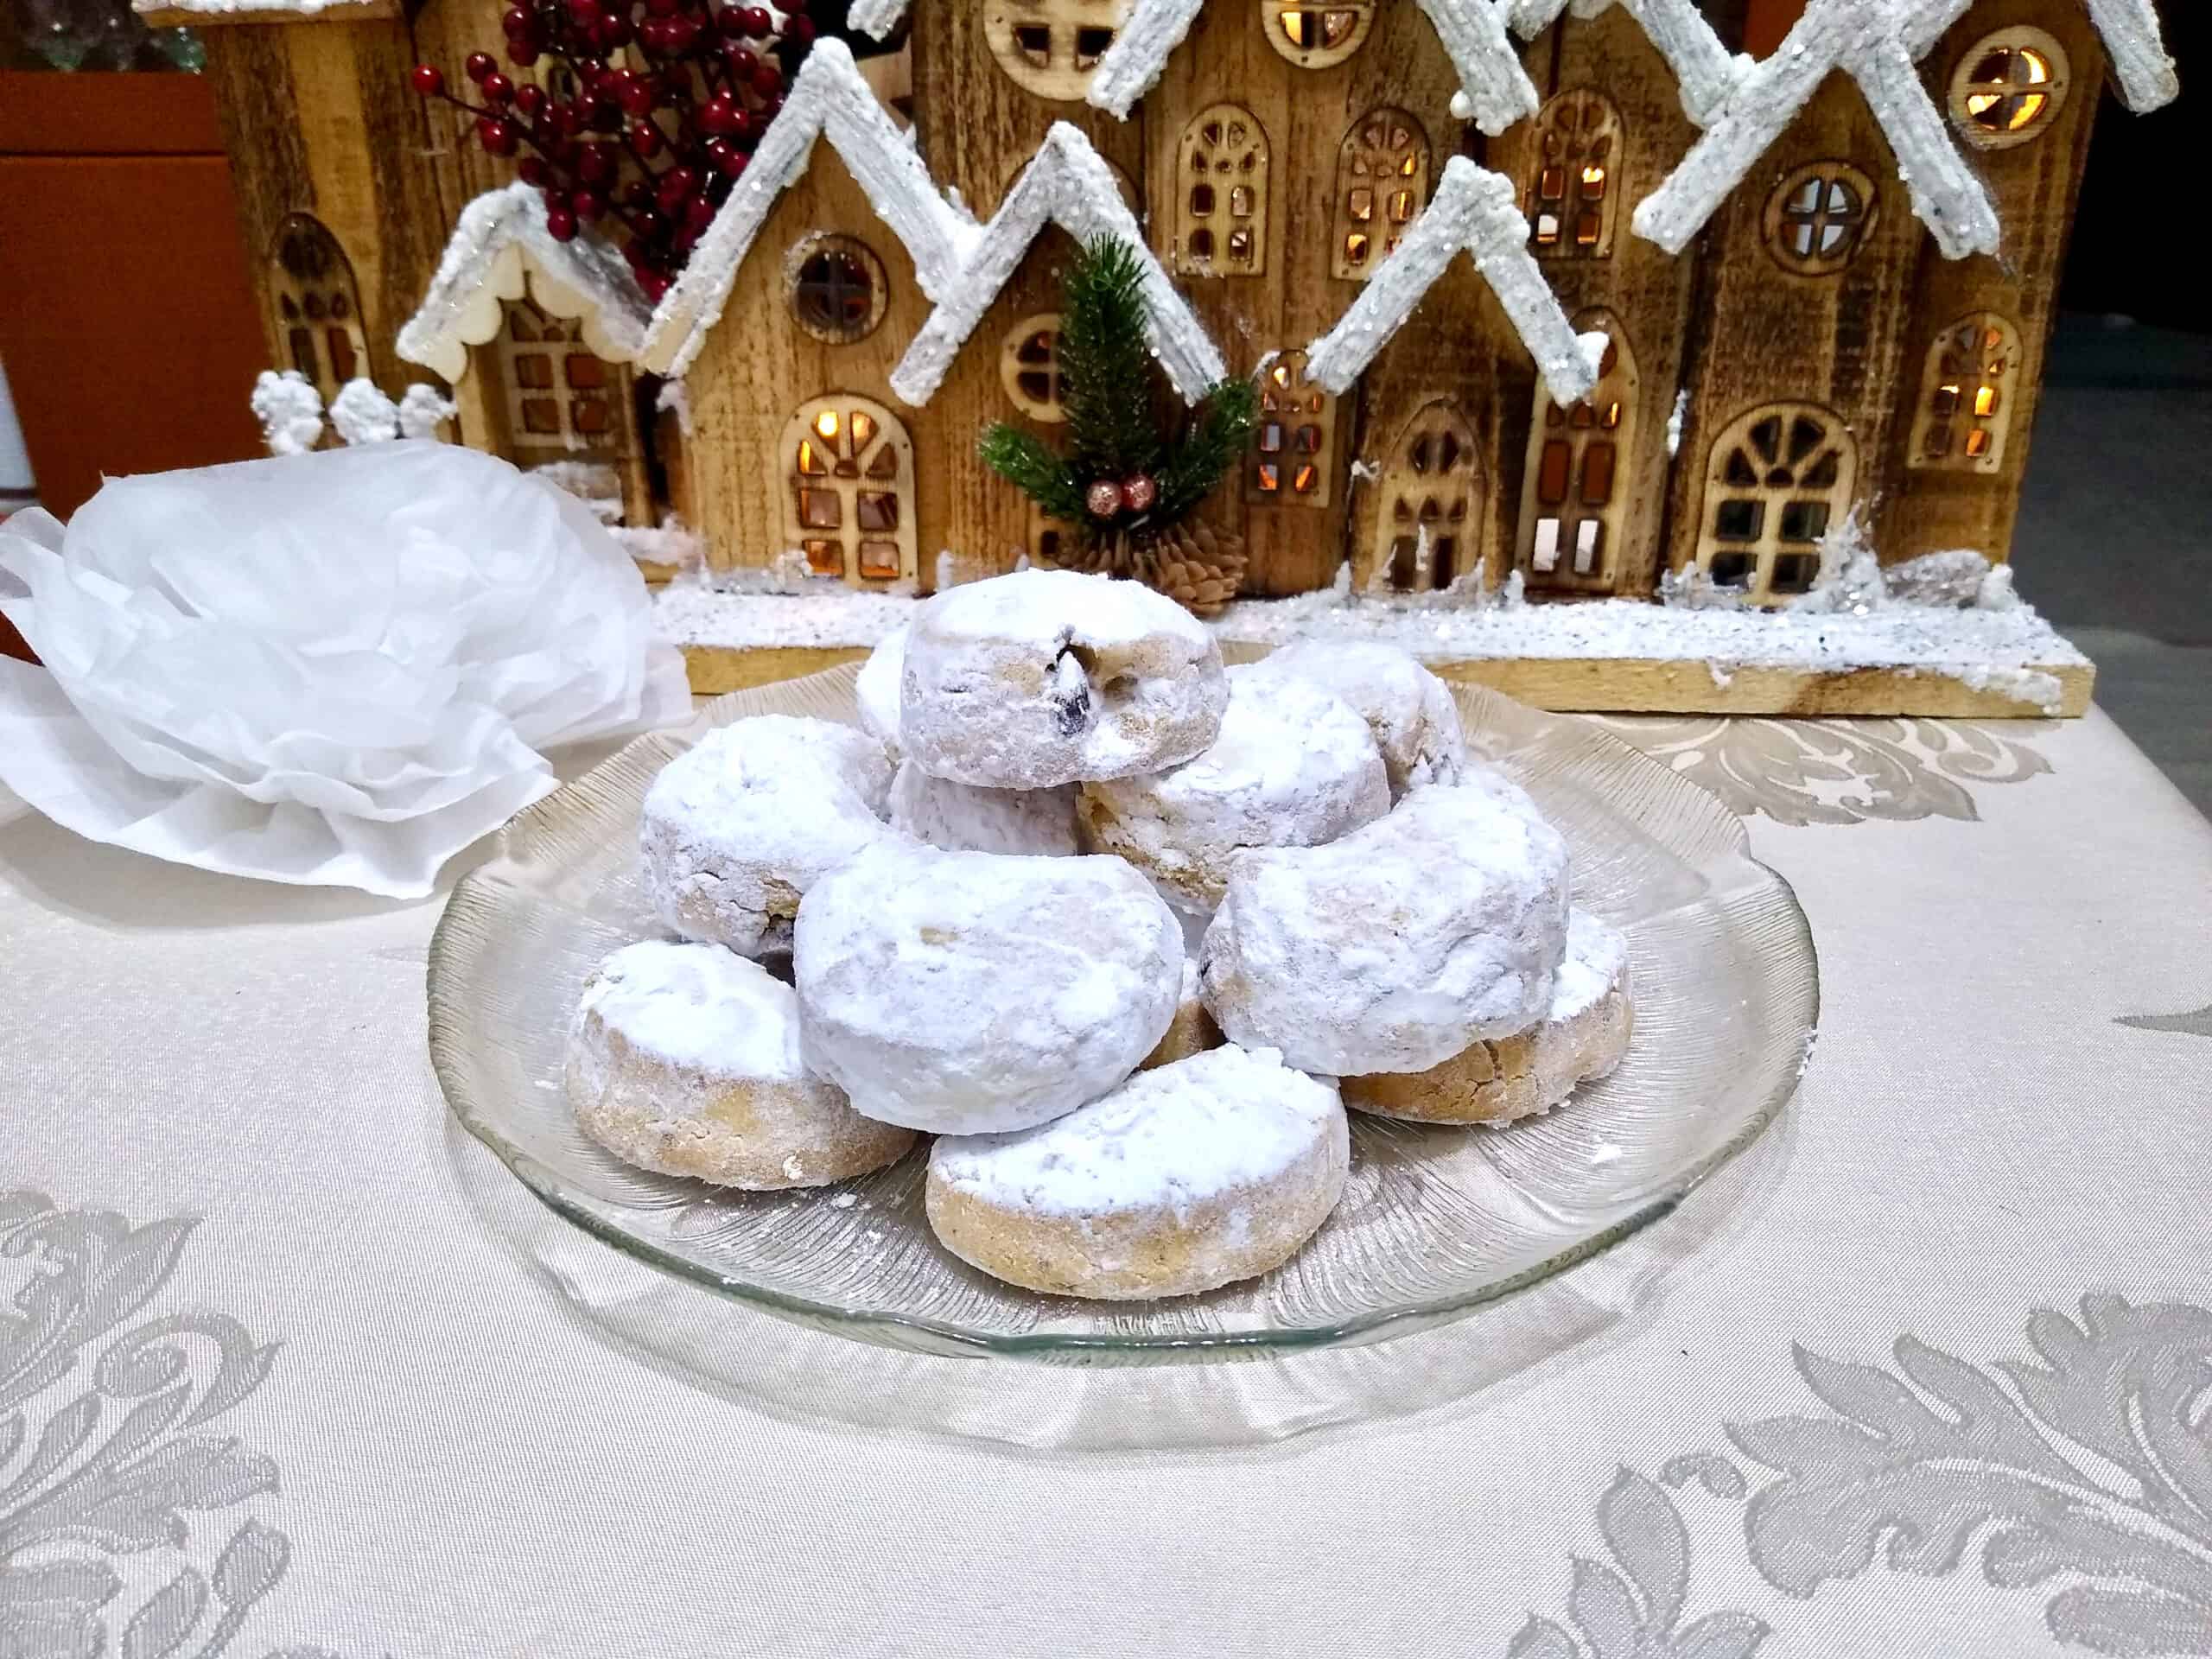 Kourabiedes (Greek Almond Christmas Cookies)